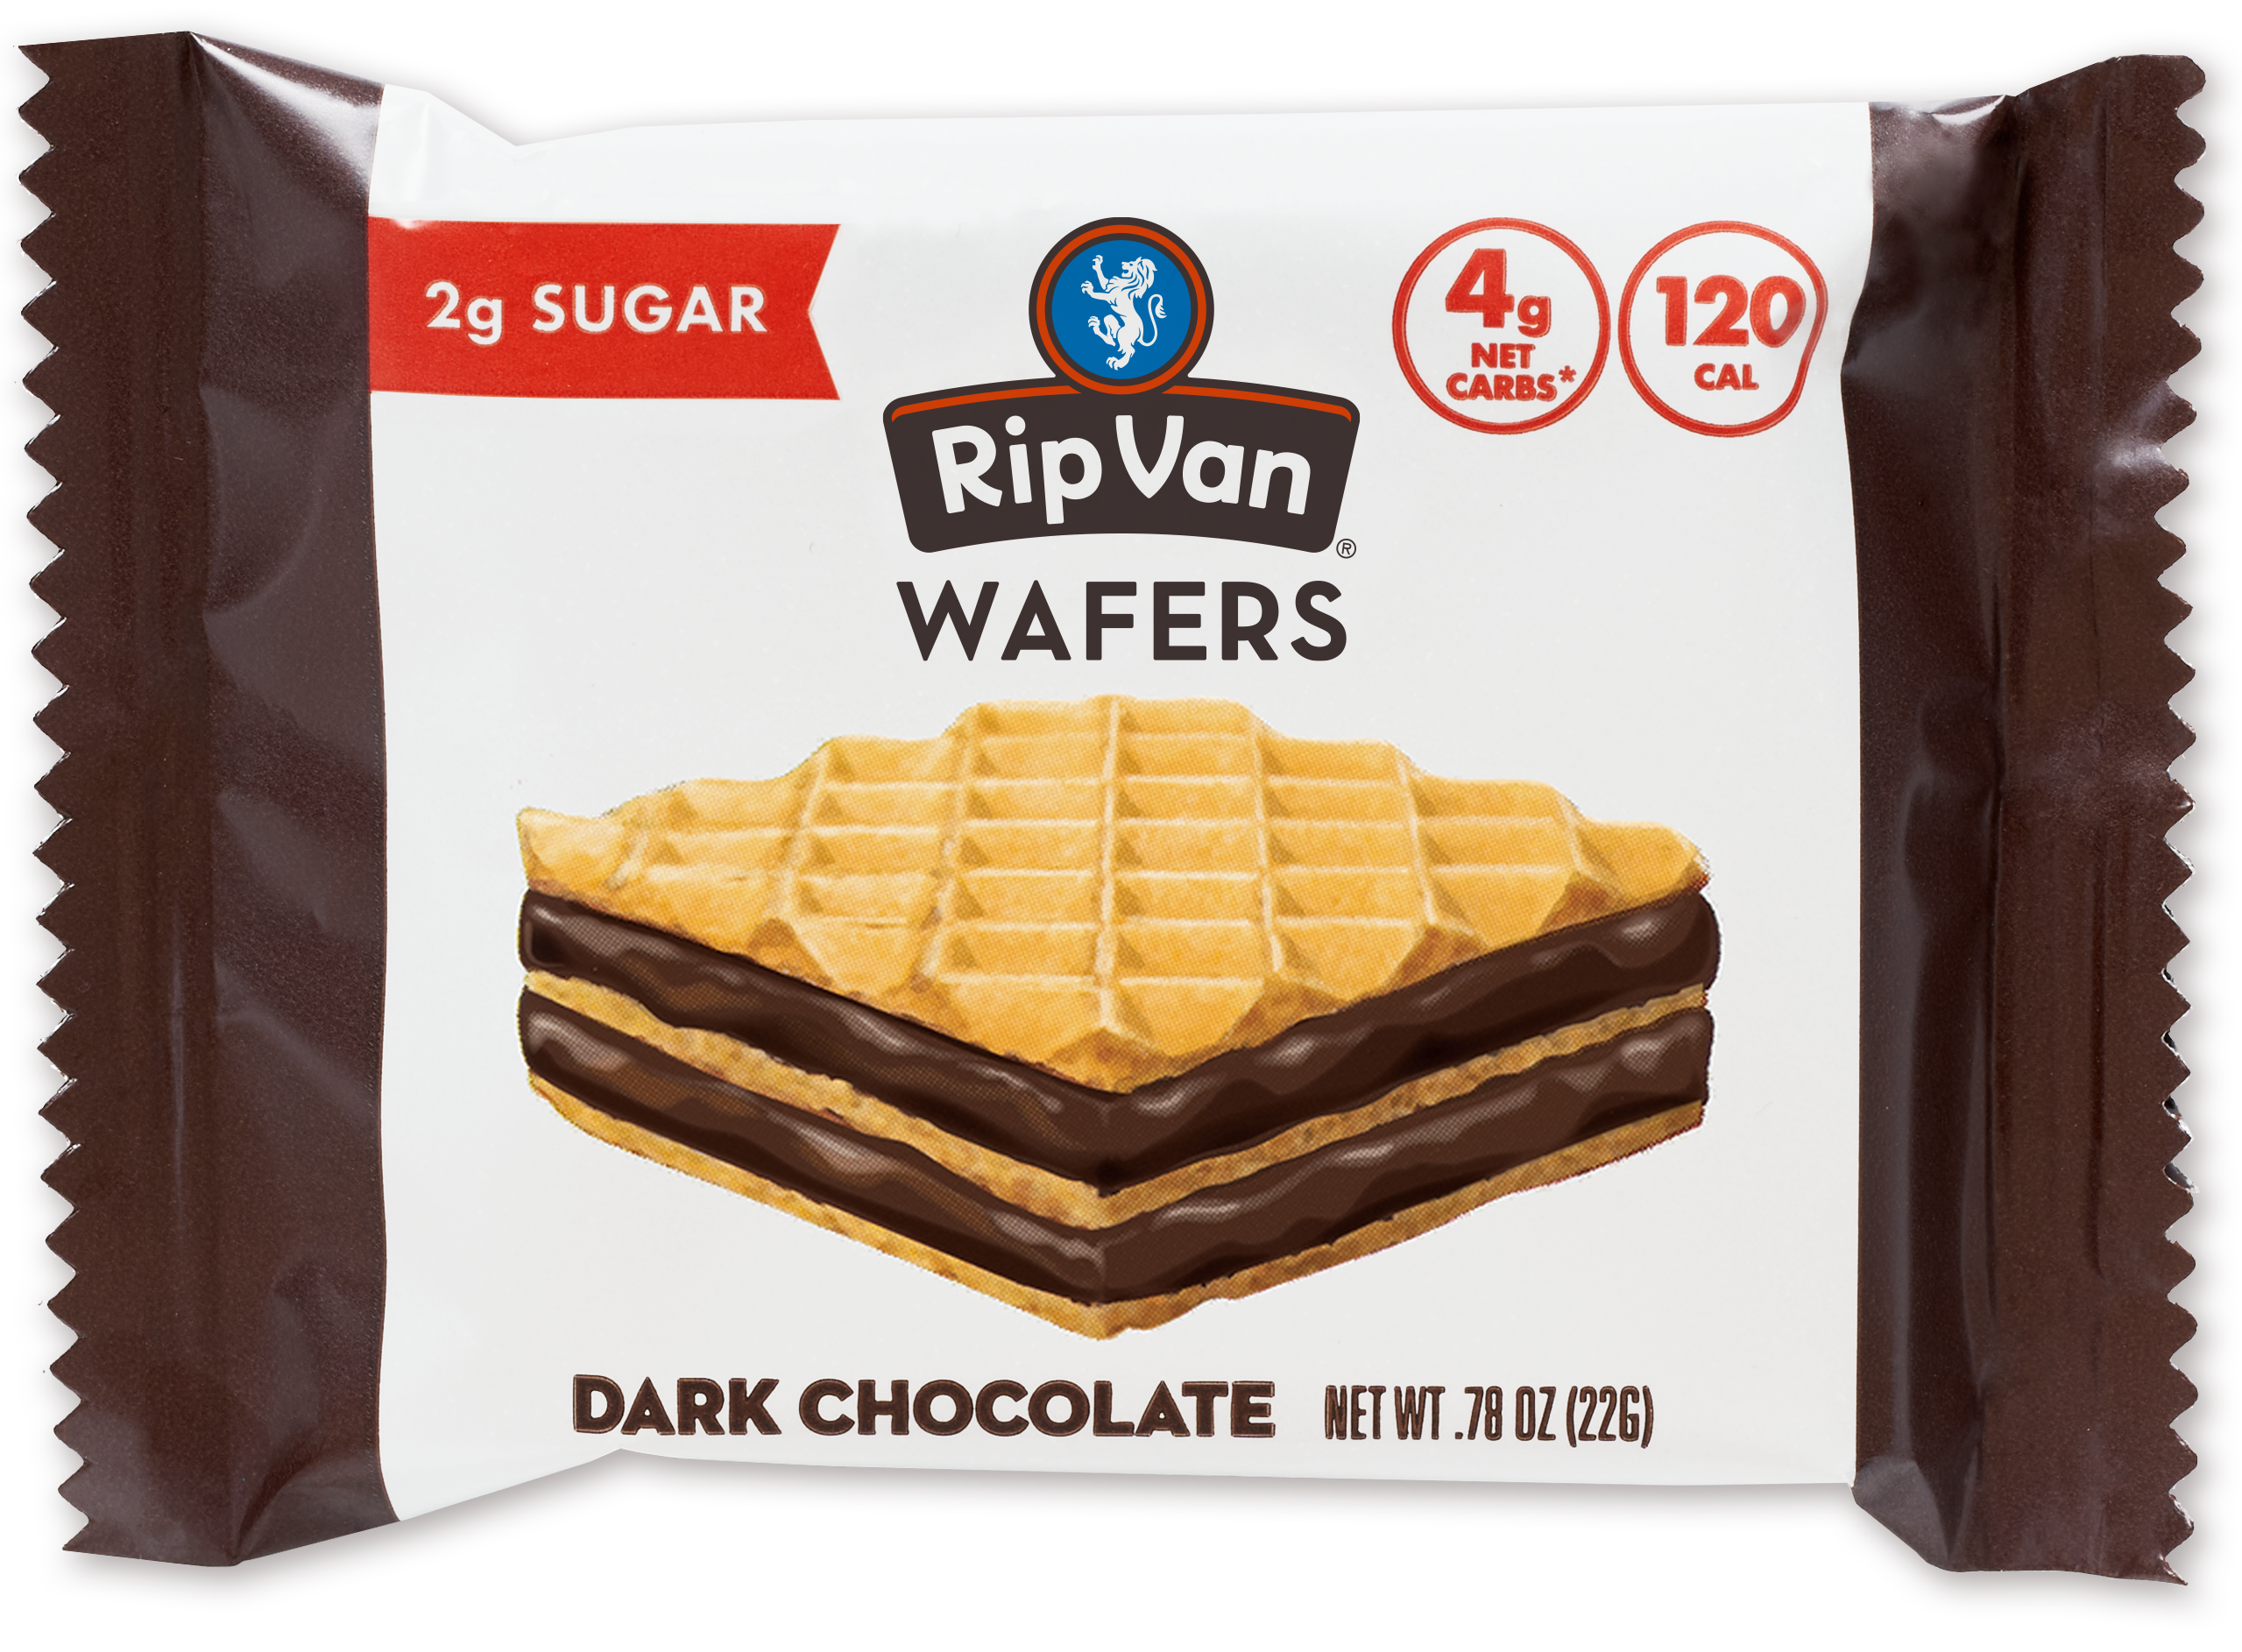 Wafer Snacks by Rip Van - Dark Chocolate - High-quality Cakes & Cookies by Rip Van at 